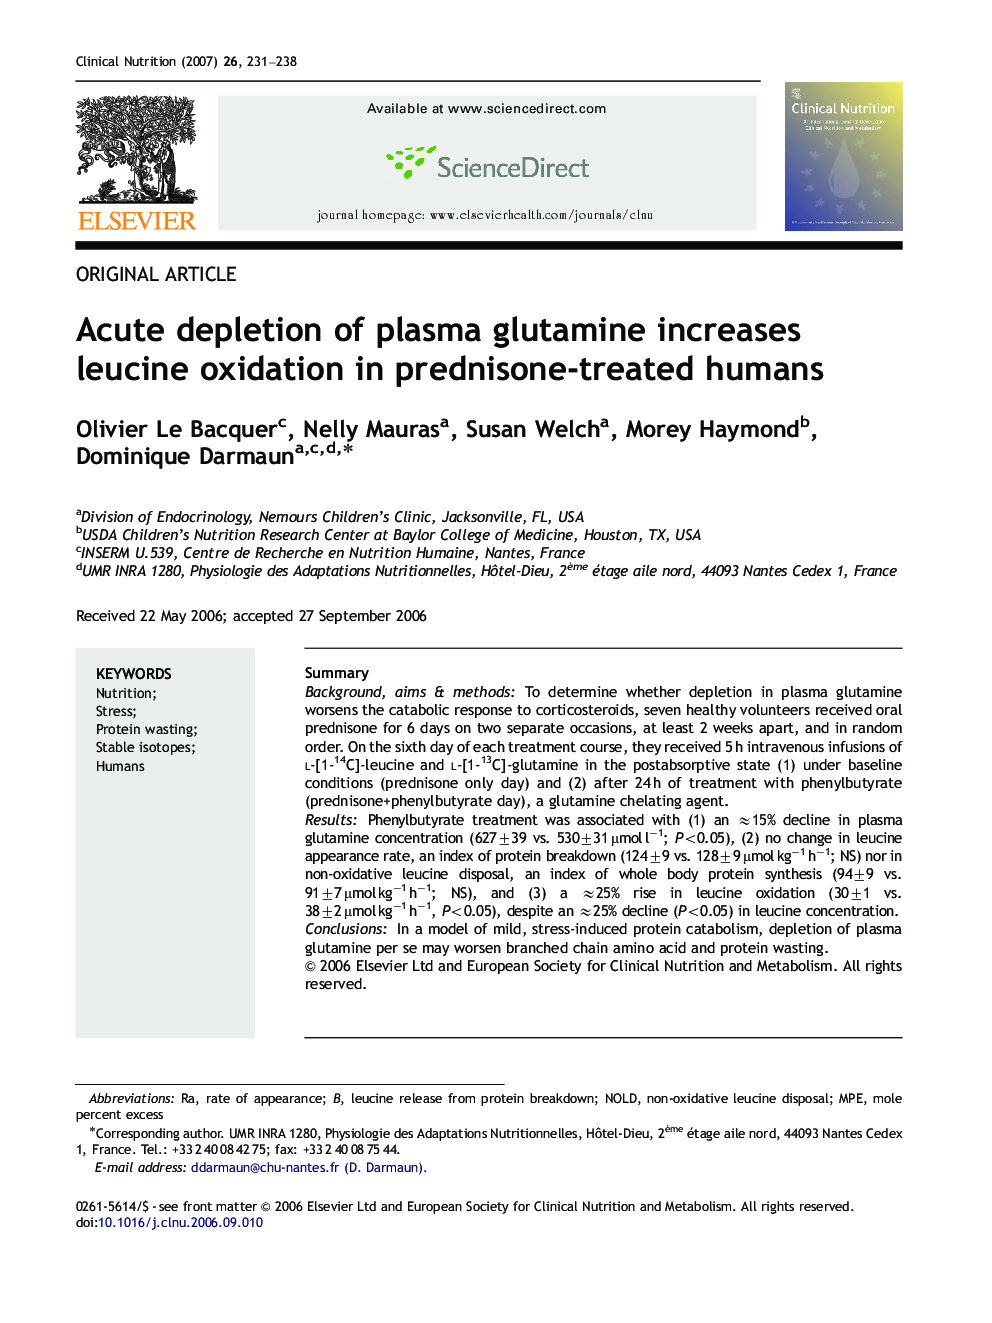 Acute depletion of plasma glutamine increases leucine oxidation in prednisone-treated humans